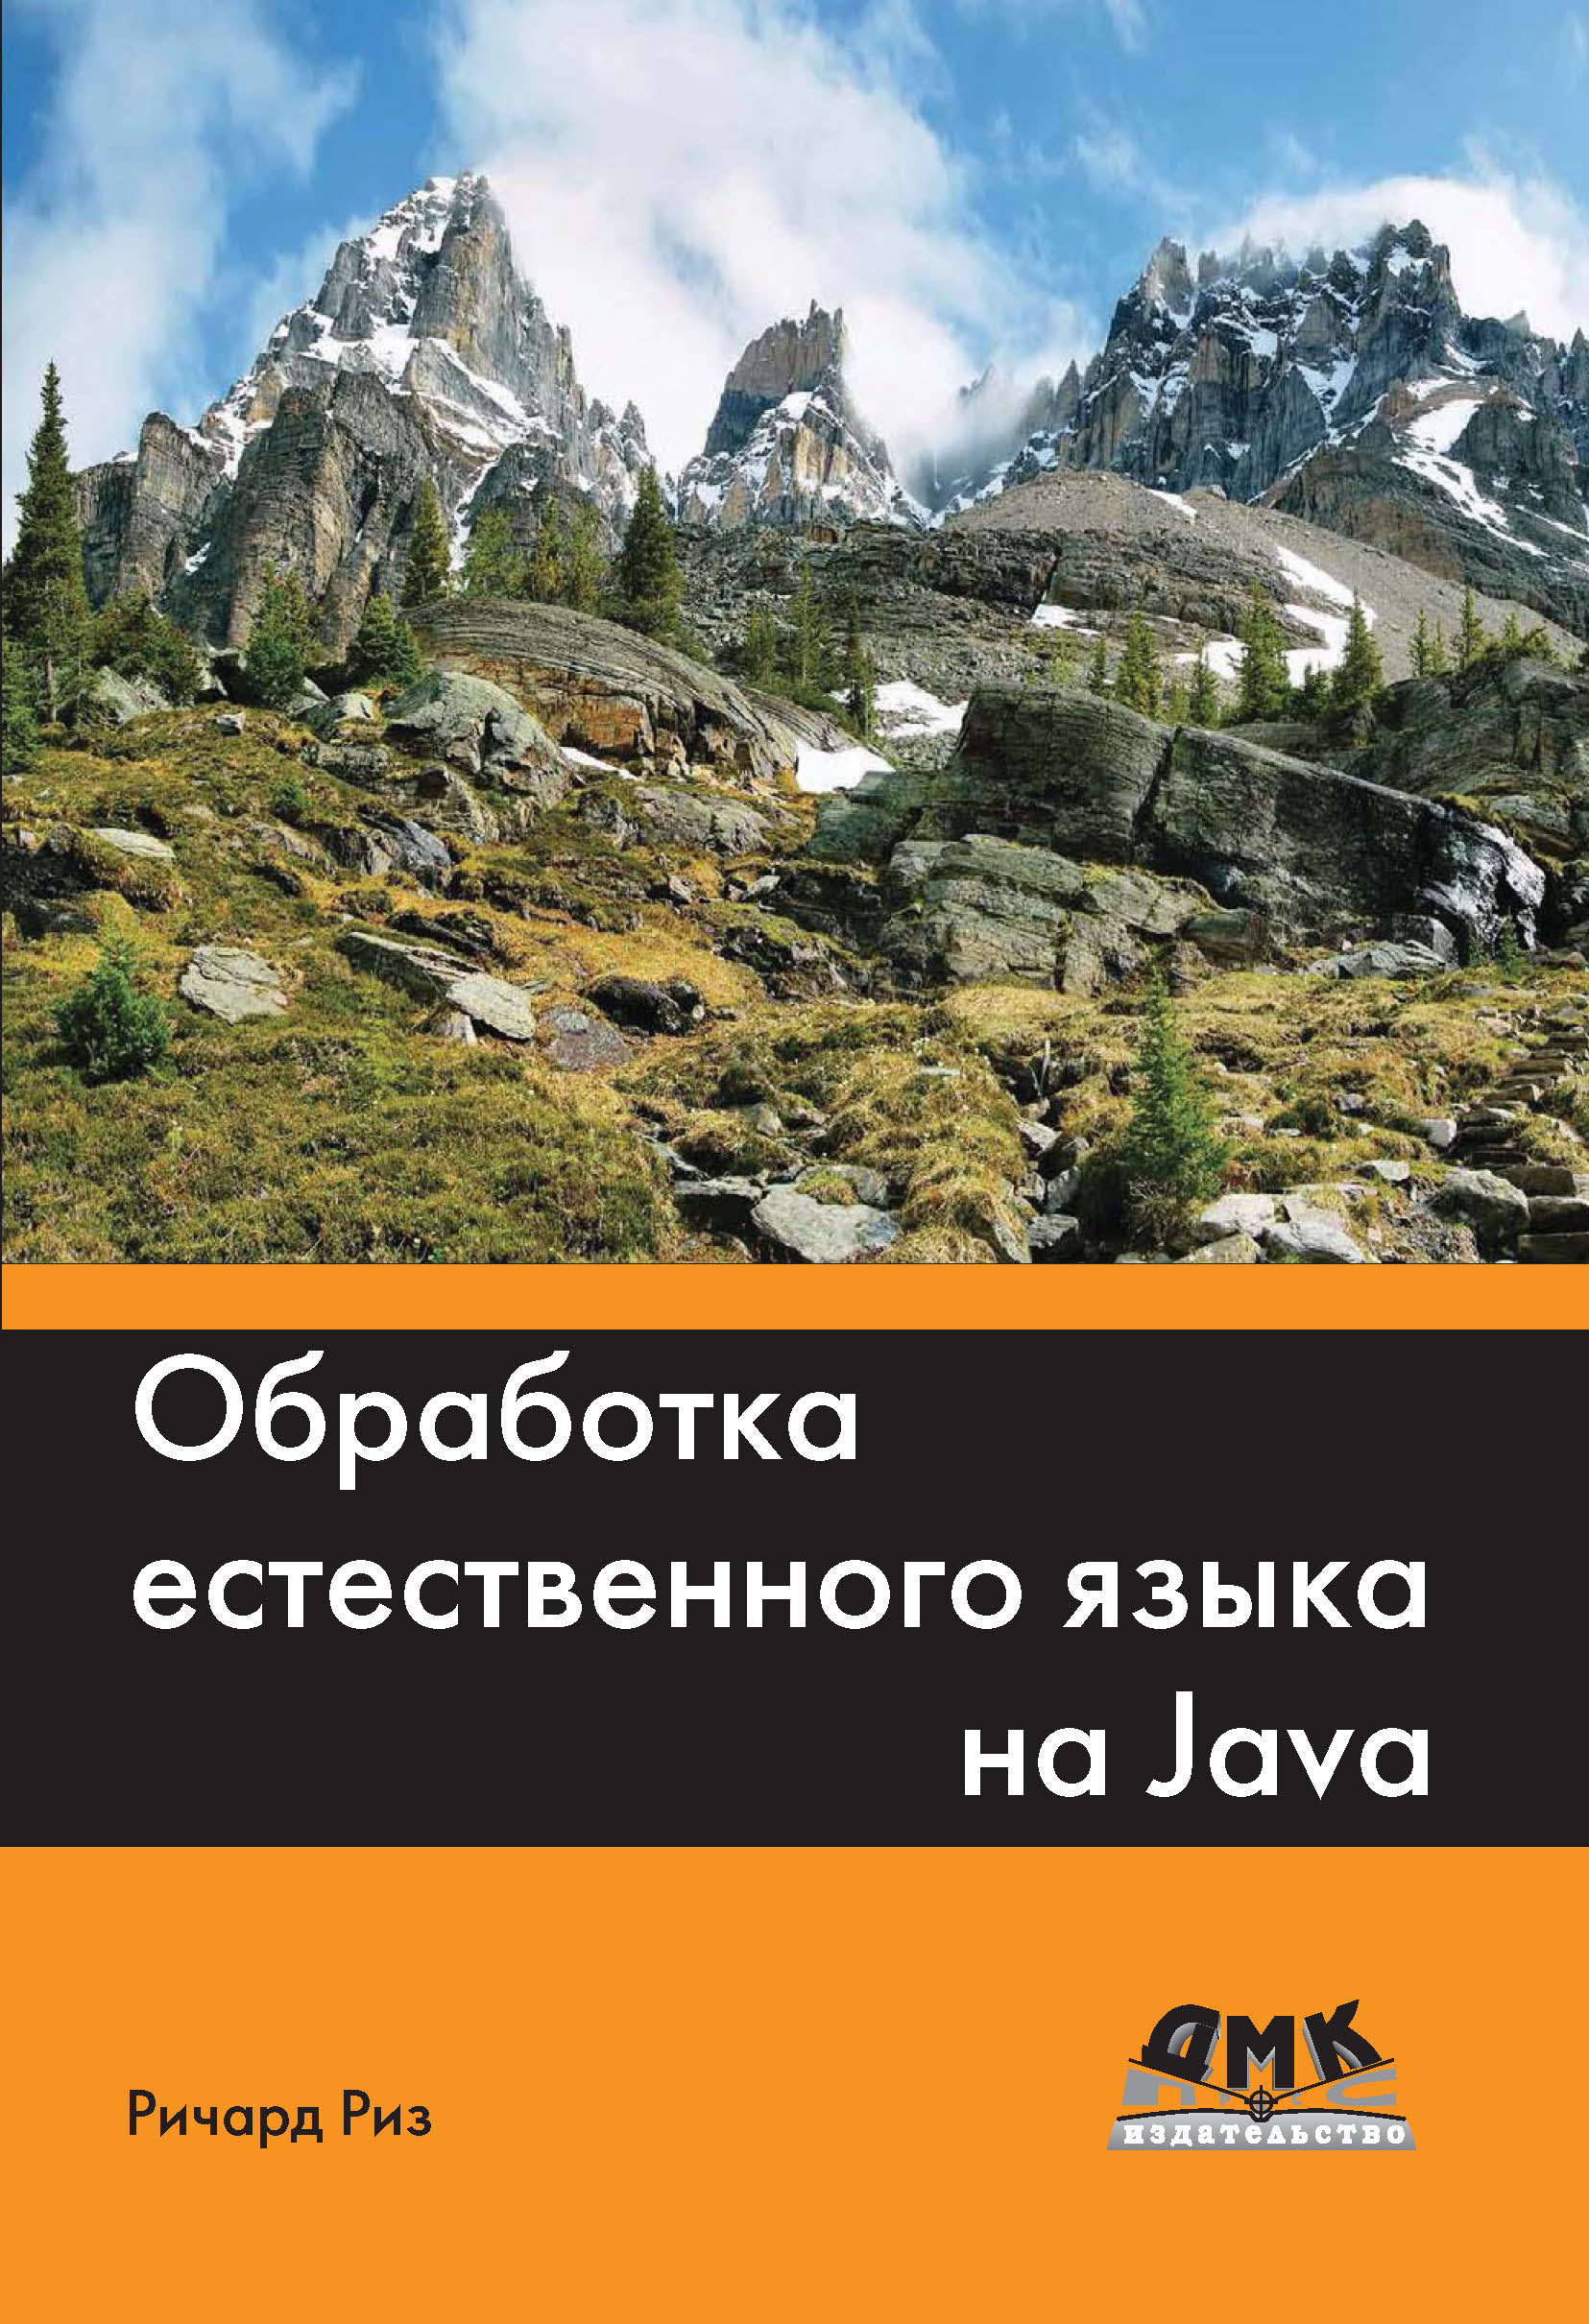 Книга  Обработка естественного языка на Java созданная Ричард Риз, А. В. Снастин может относится к жанру зарубежная компьютерная литература, программирование. Стоимость электронной книги Обработка естественного языка на Java с идентификатором 22861051 составляет 559.00 руб.